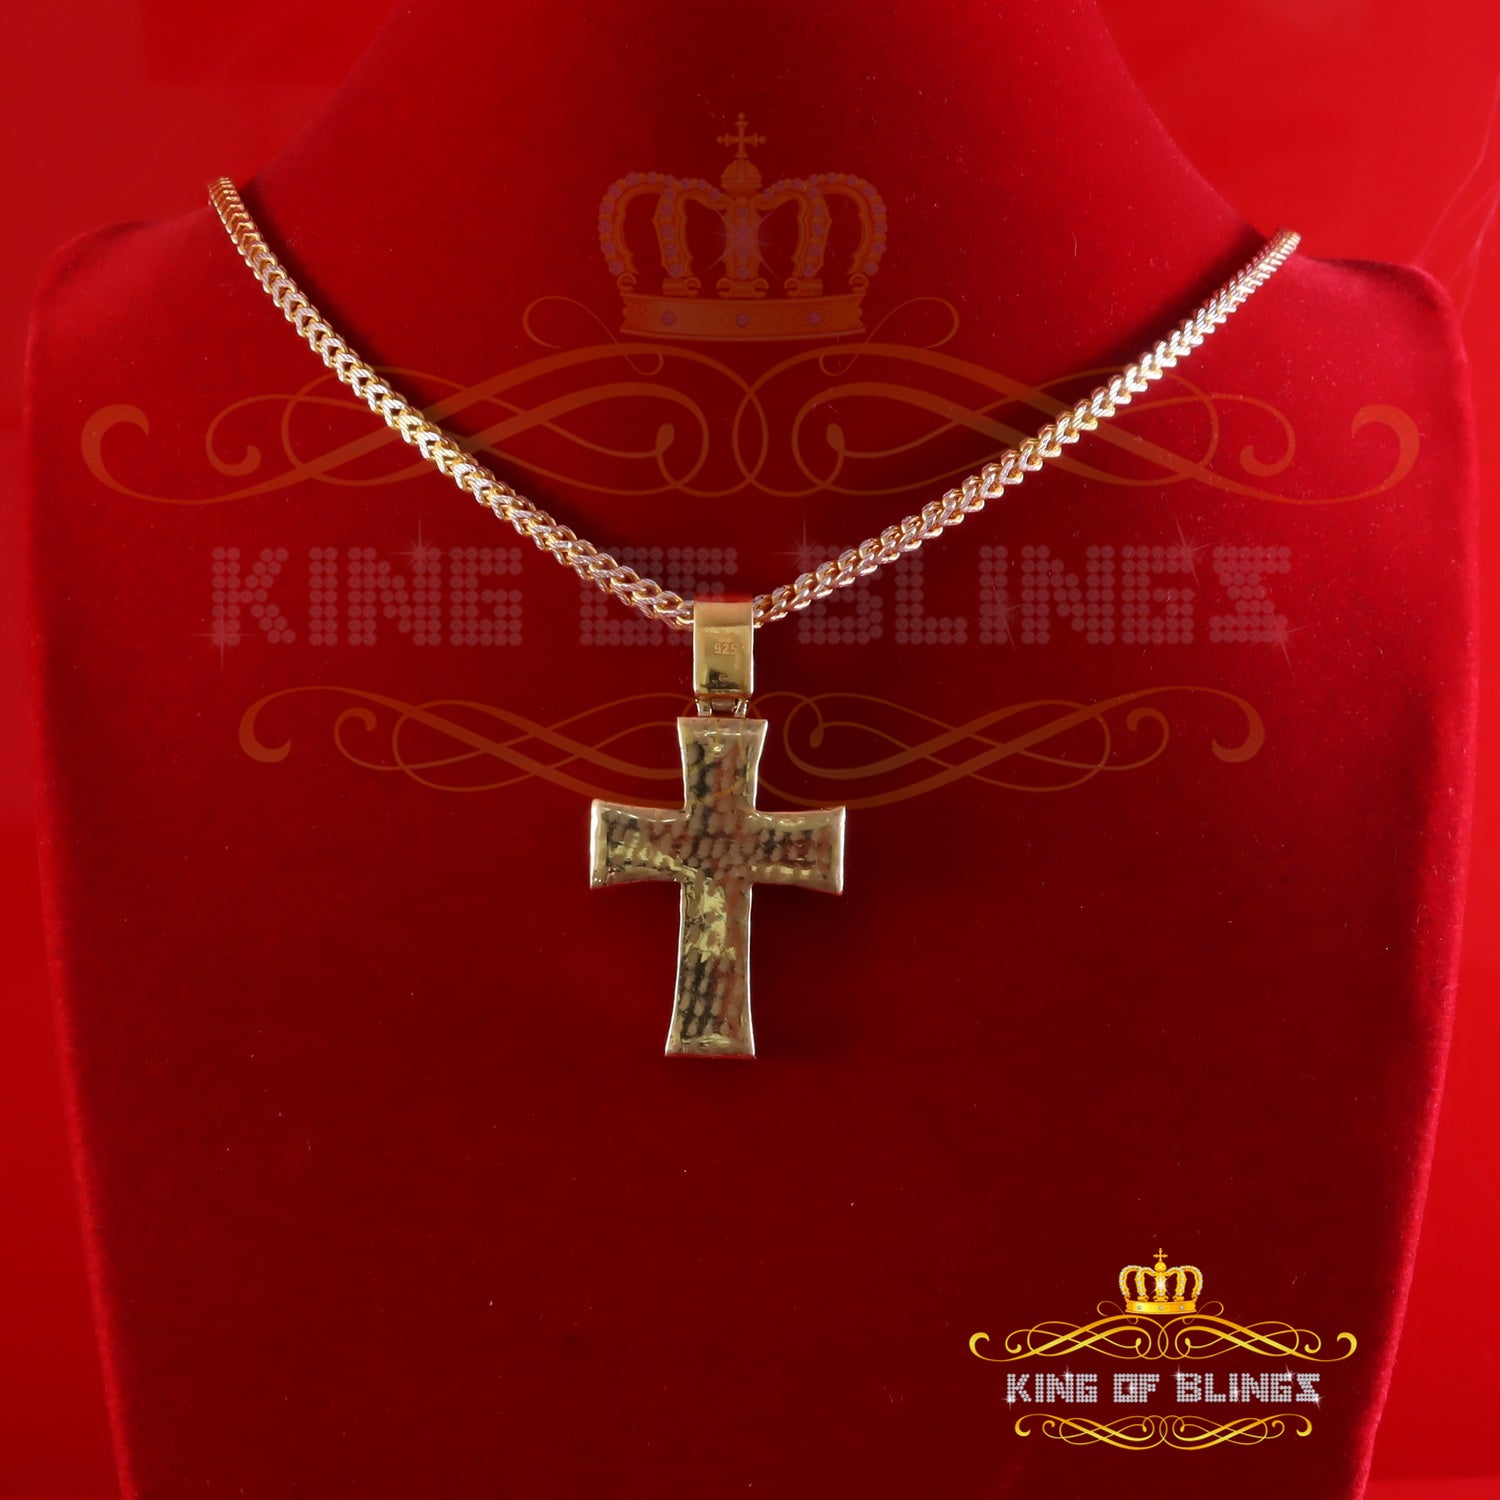 King Of Bling's Cross Pendant 925 Yellow Sterling Silver 2.25ct VVS D Clr. Moissanite for Women KING OF BLINGS